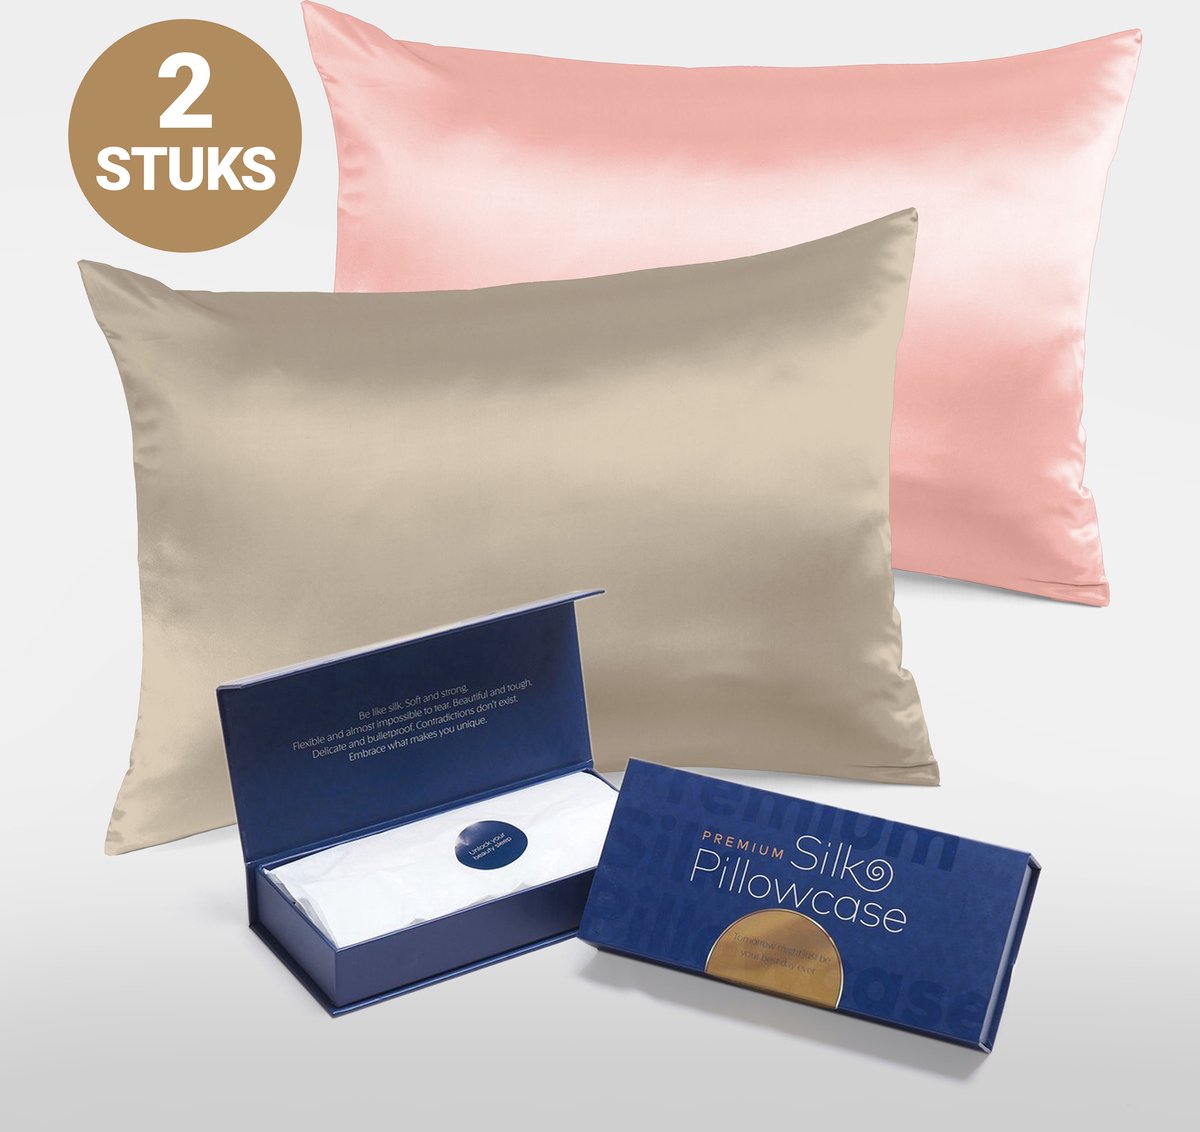 Slowwave Premium Silk Pillowcase - Extra voordelig colorpack: Cherry Blossom (roze) en Champagne - Ervaar het beste zijden kussensloop - 100% Mulberry zijde - 22 momme - Hoogste kwaliteit (grade 6A) - 60x70cm